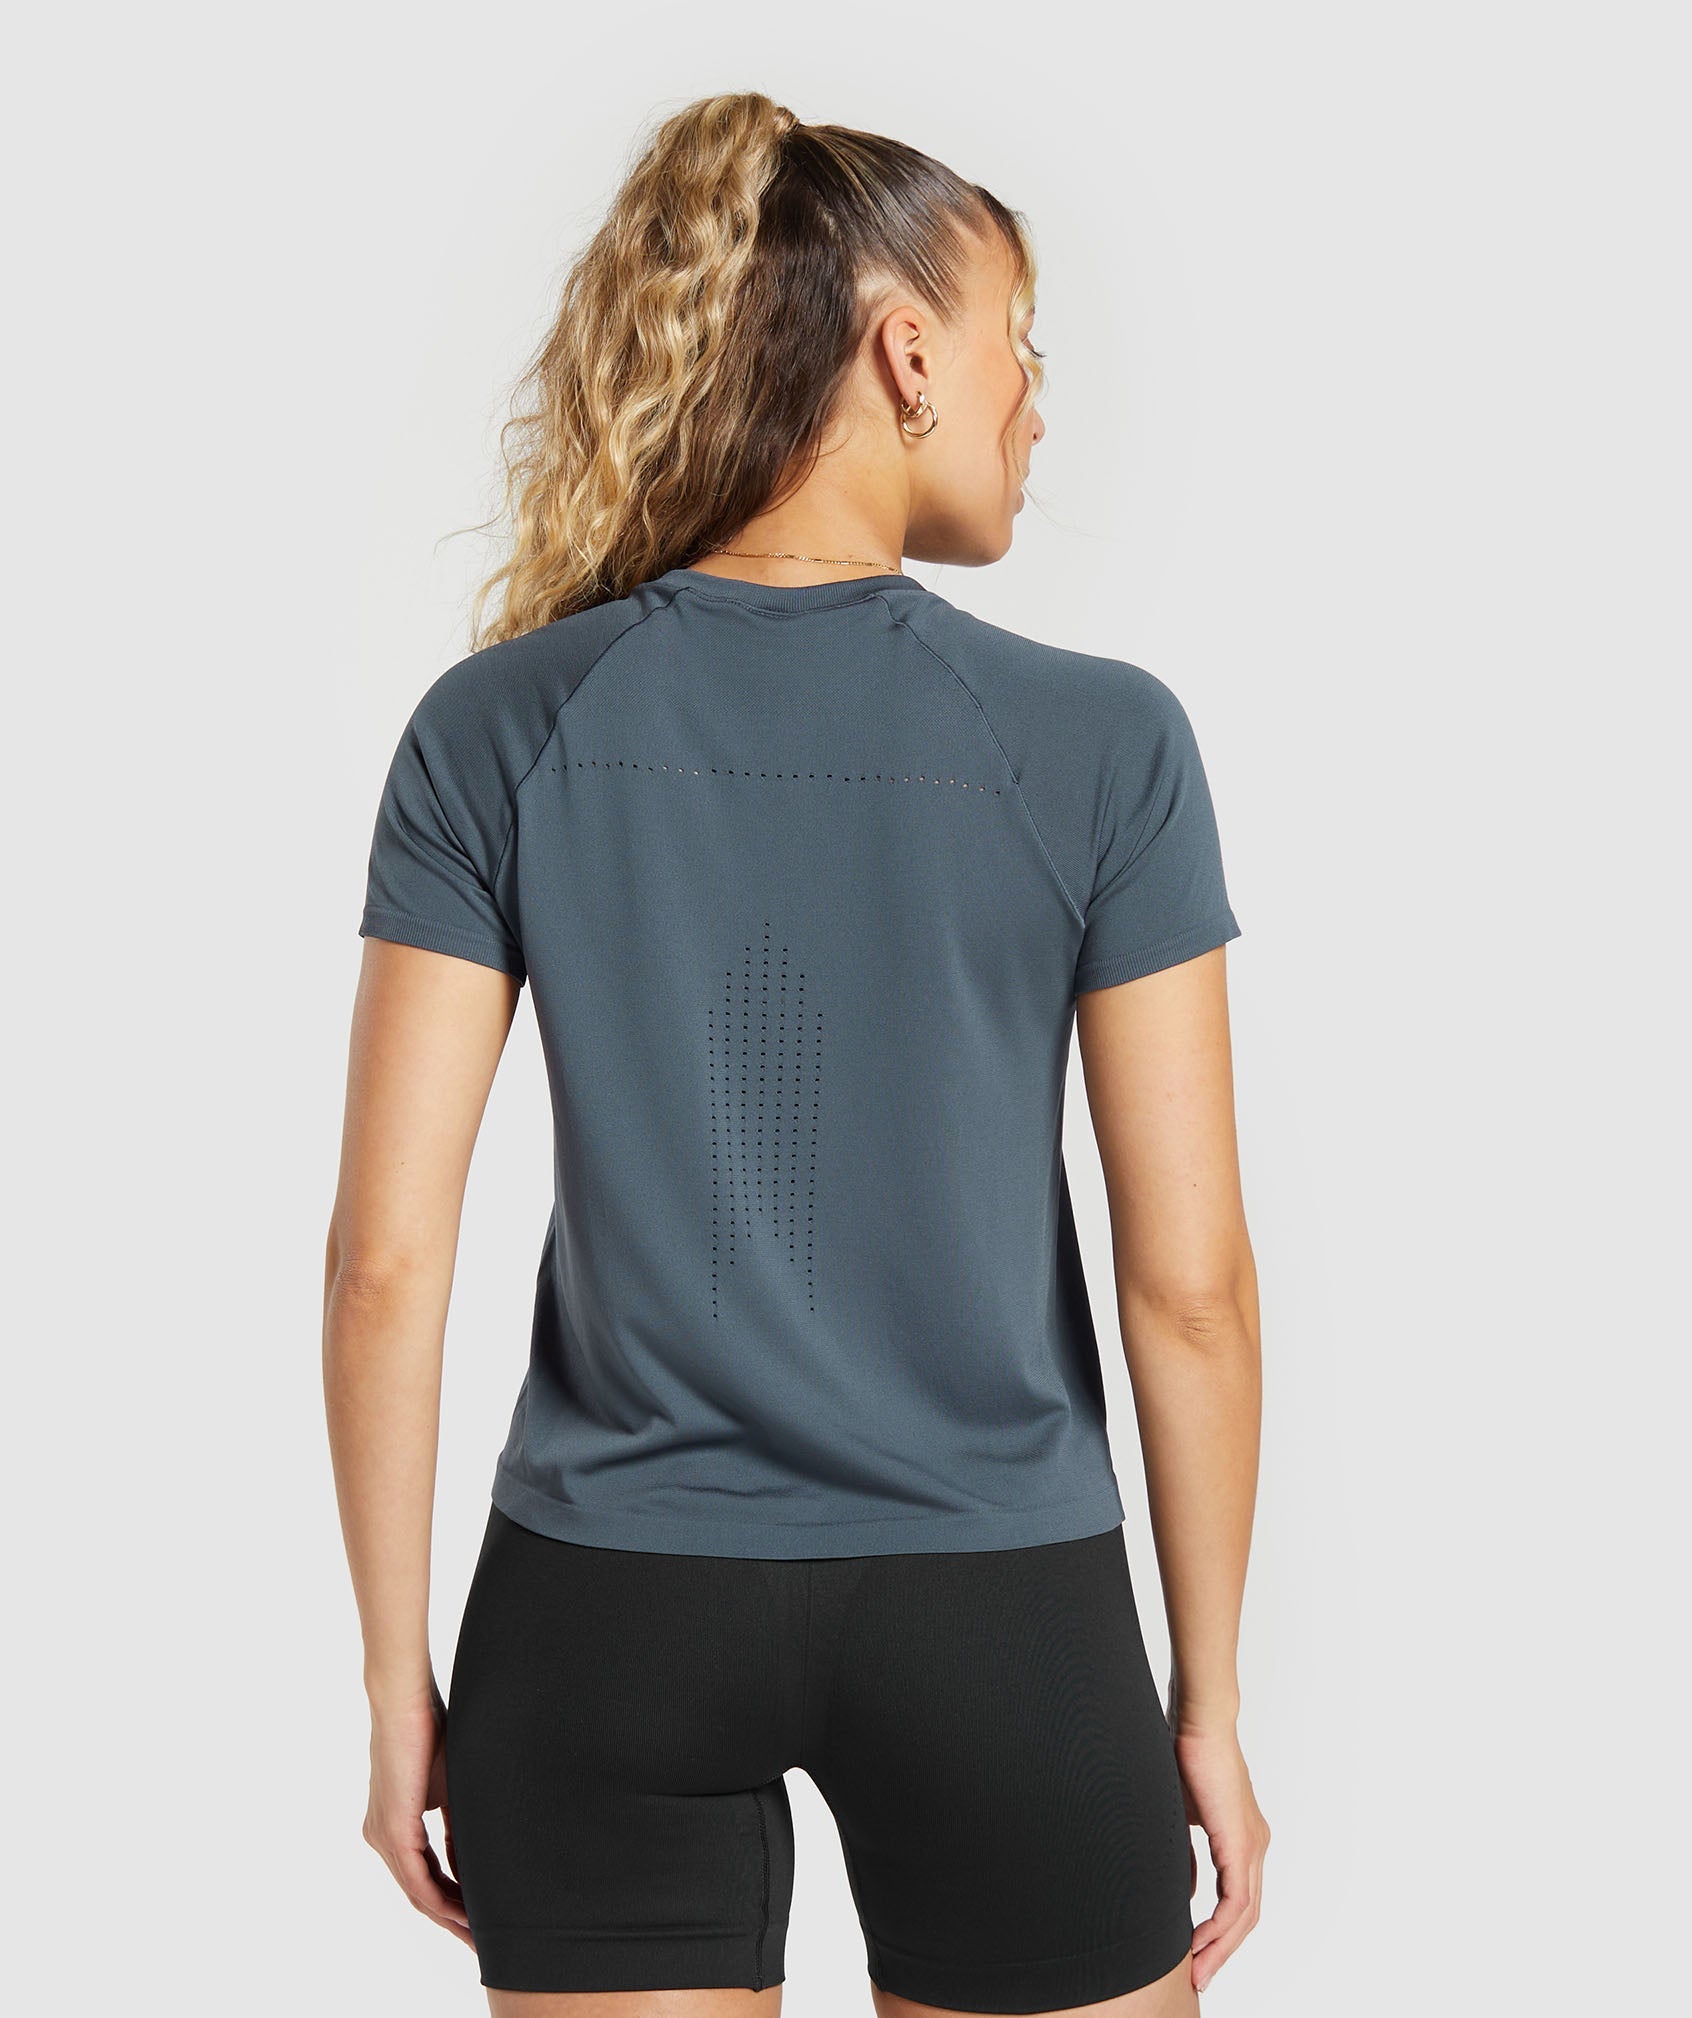 Gymshark T-Shirts & Tops  Womens Vital Seamless 2.0 Light T-Shirt Deep  Teal Marl - Mcvallescrivia